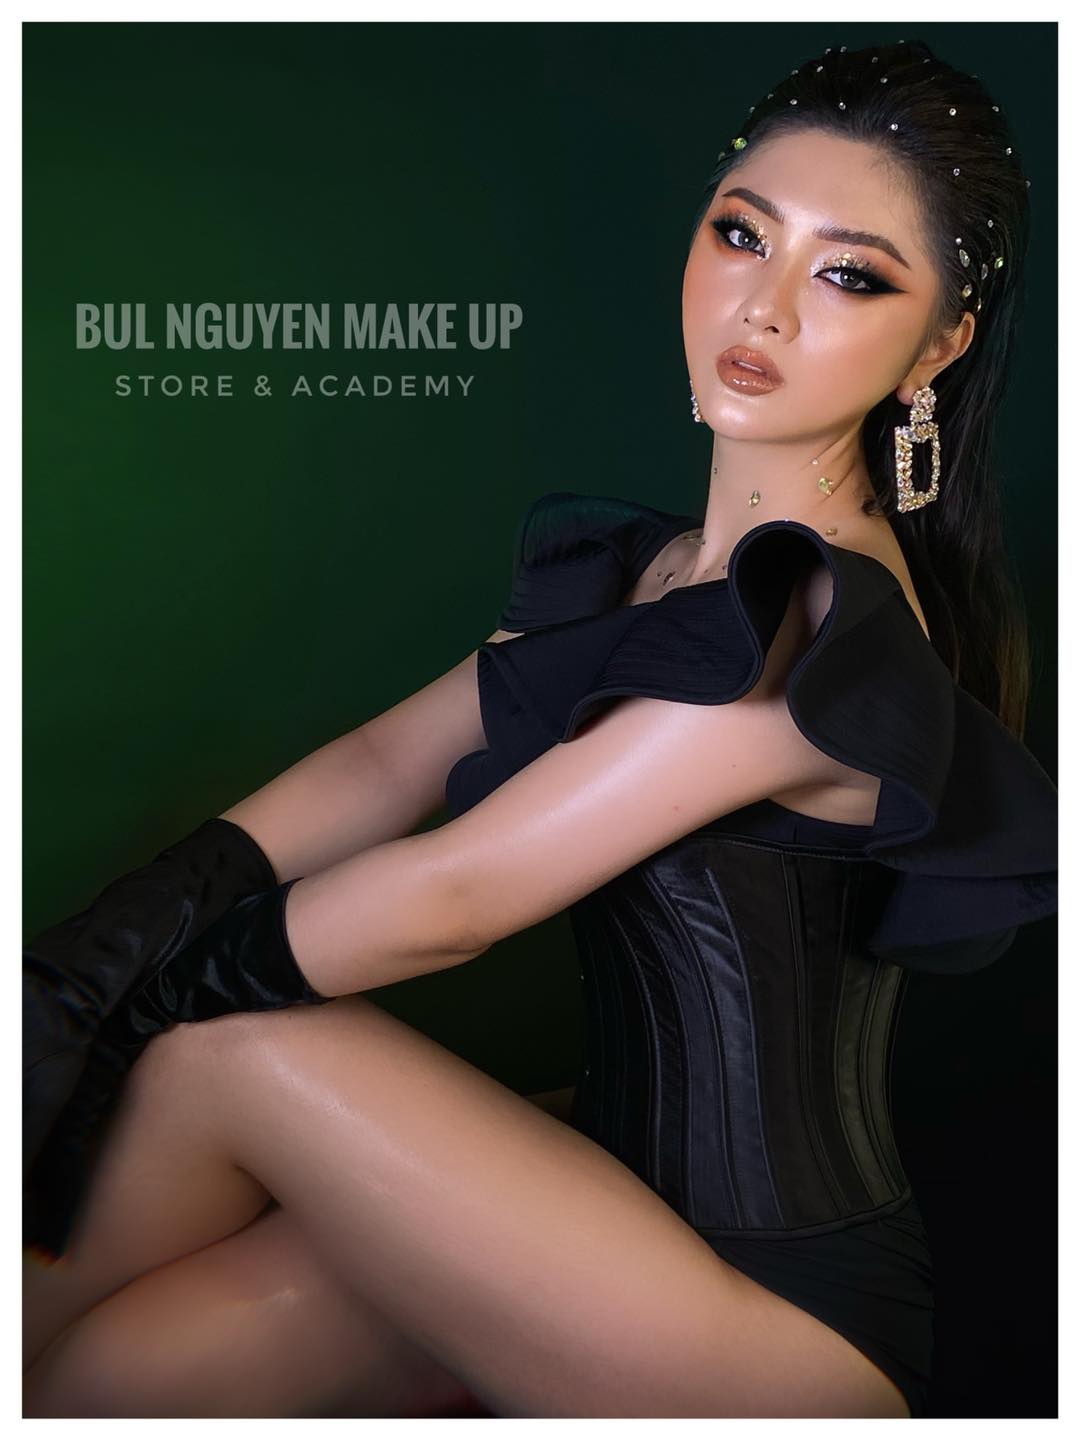 Top 7 tiệm trang điểm cô dâu đẹp nhất tại Hà Nội -  Bul Nguyễn Make Up